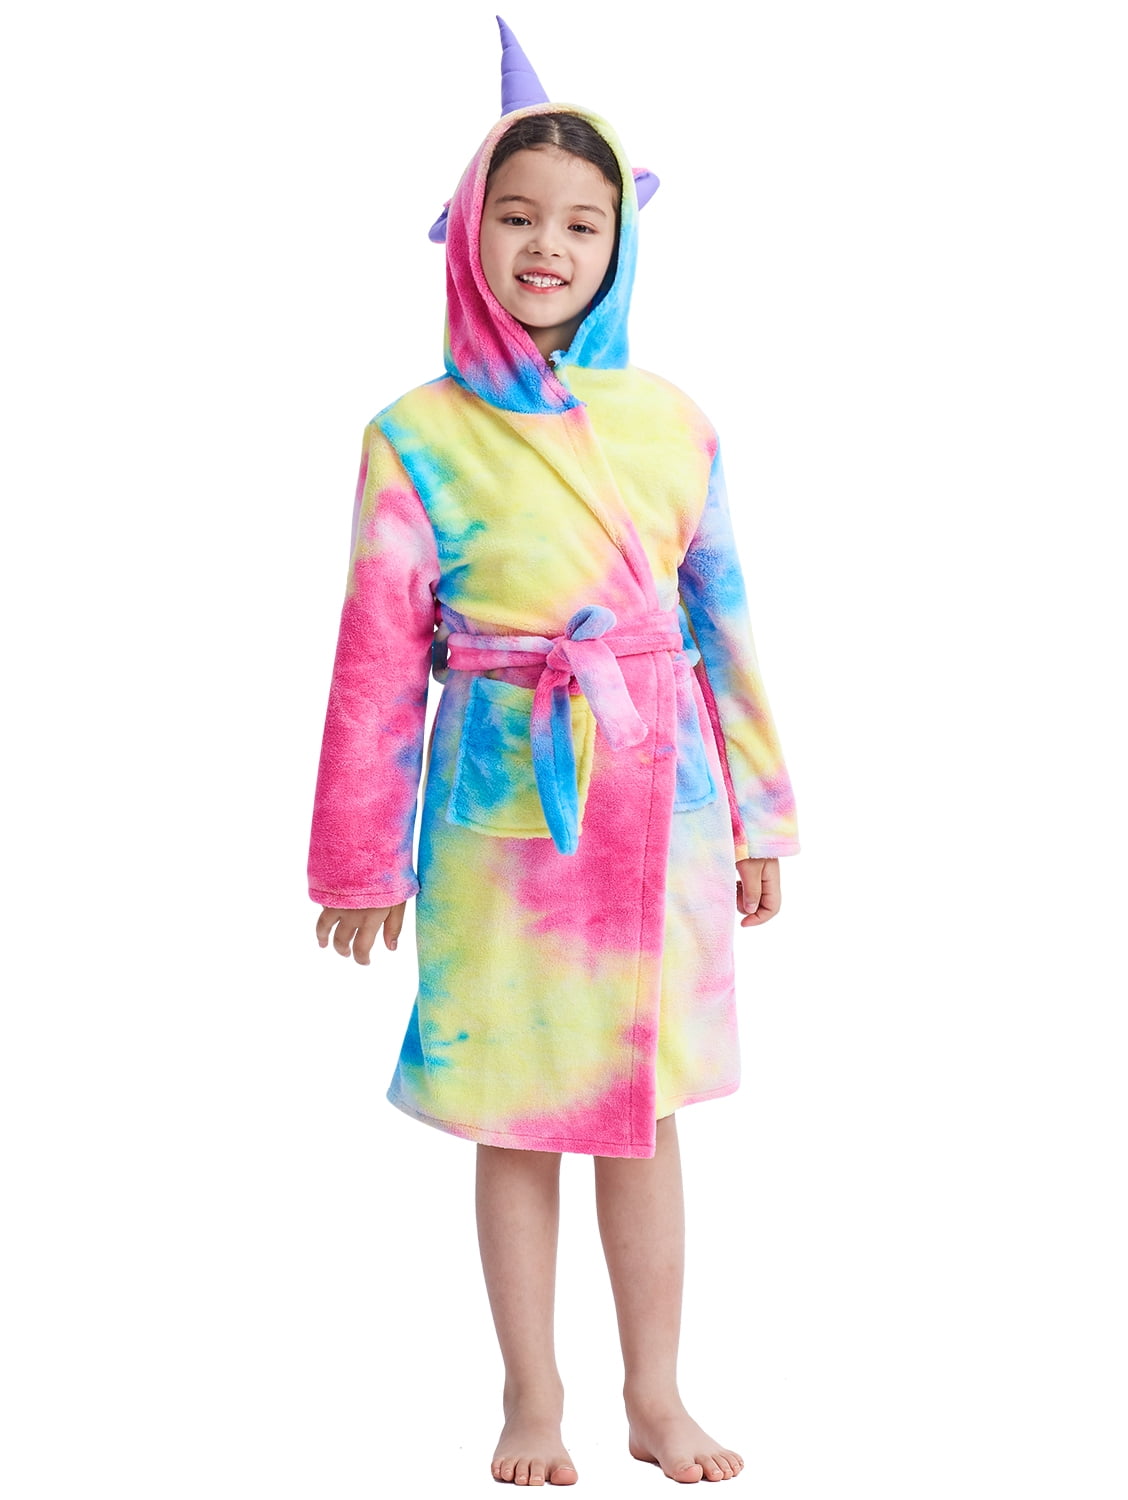 UsHigh Kids Unicorn Bathrobe Flannel Soft Sleepwear Gift Comfy Four Season